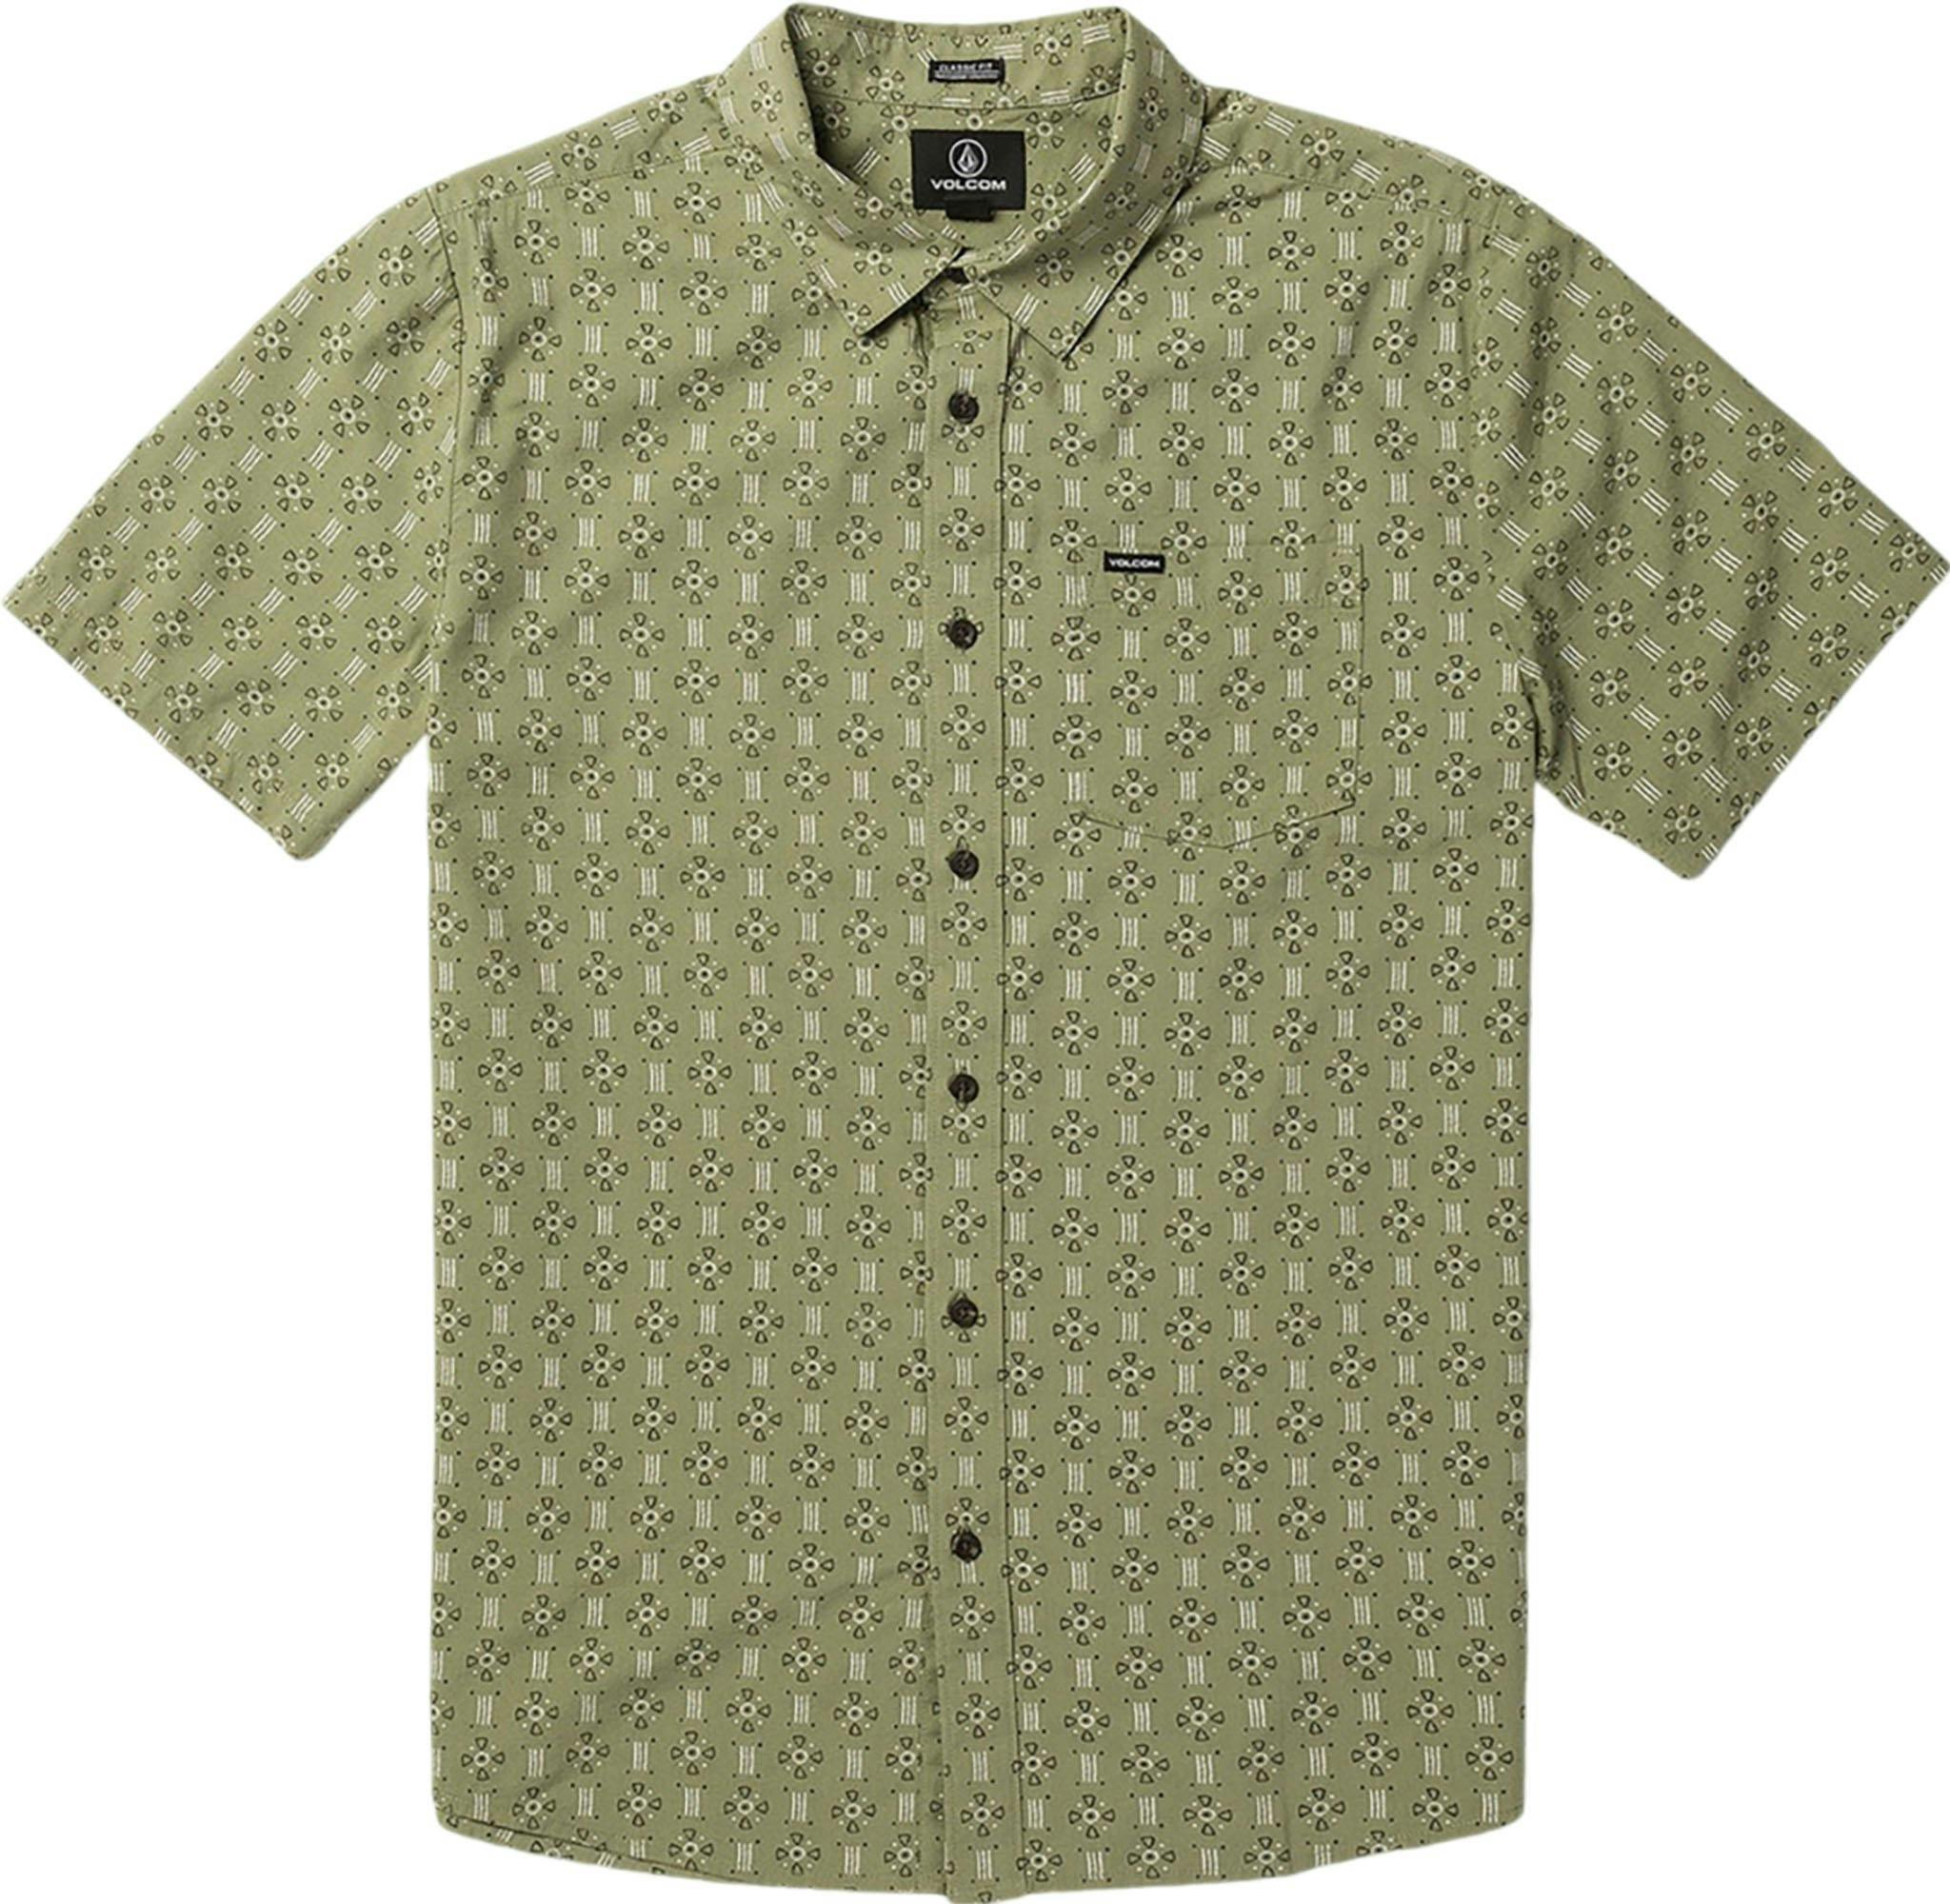 Product image for Stone Mash Short Sleeve Shirt - Men's